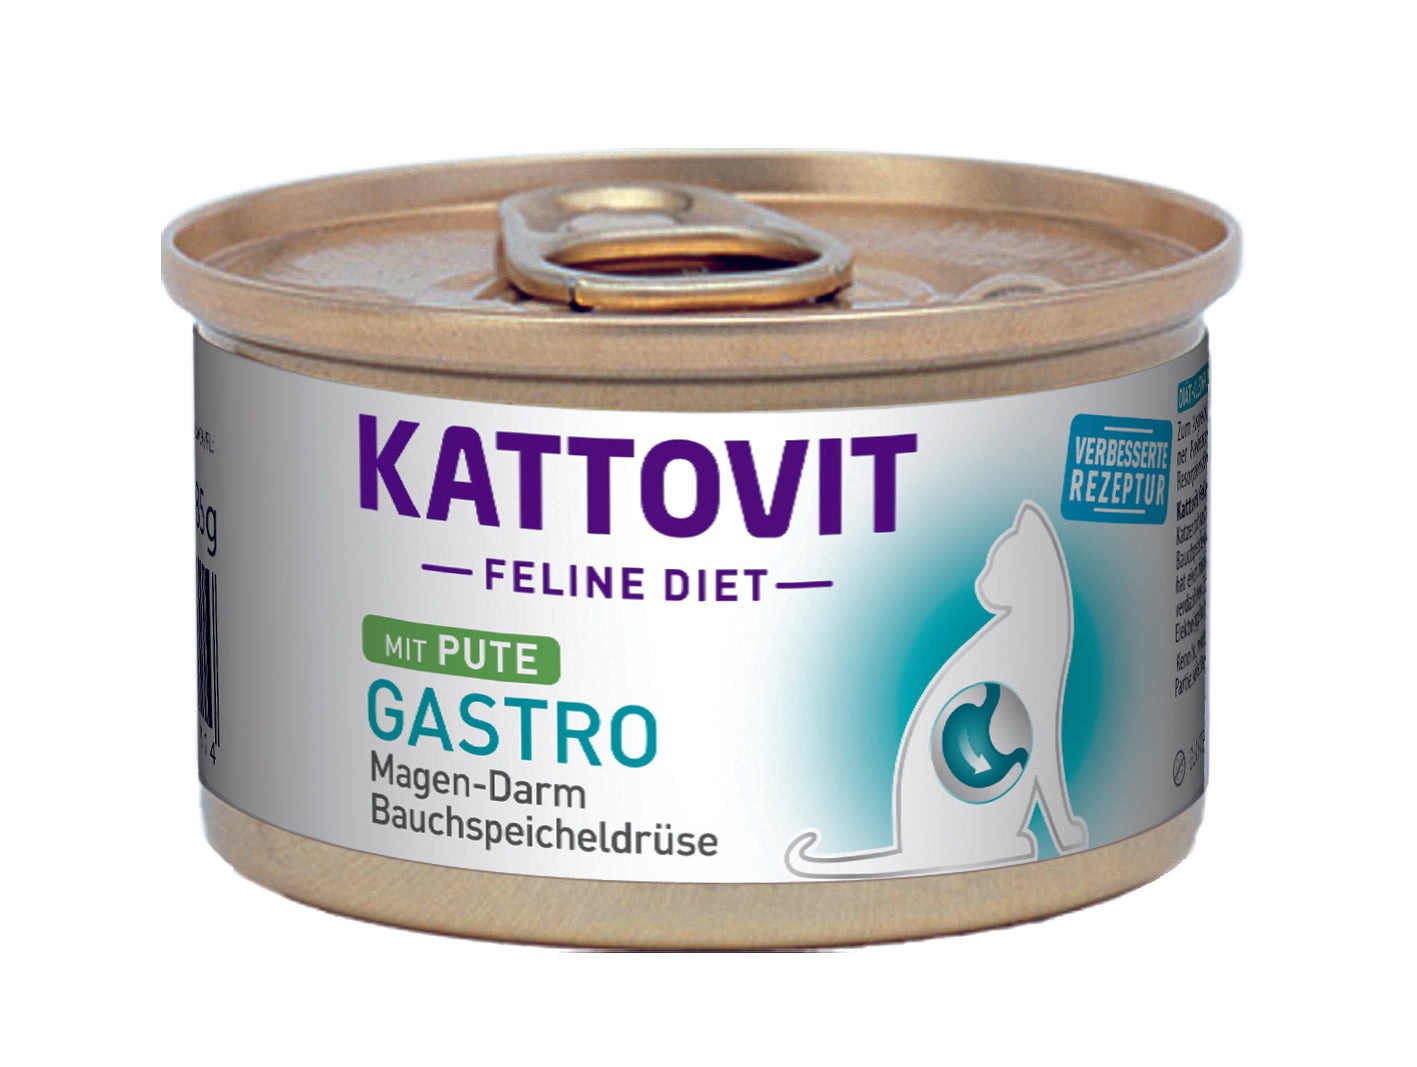 Artikel mit dem Namen Kattovit Feline Diet Gastro Pute - Magen-Darm / Bauchspeicheldrüse (i-Rezeptur) im Shop von zoo.de , dem Onlineshop für nachhaltiges Hundefutter und Katzenfutter.